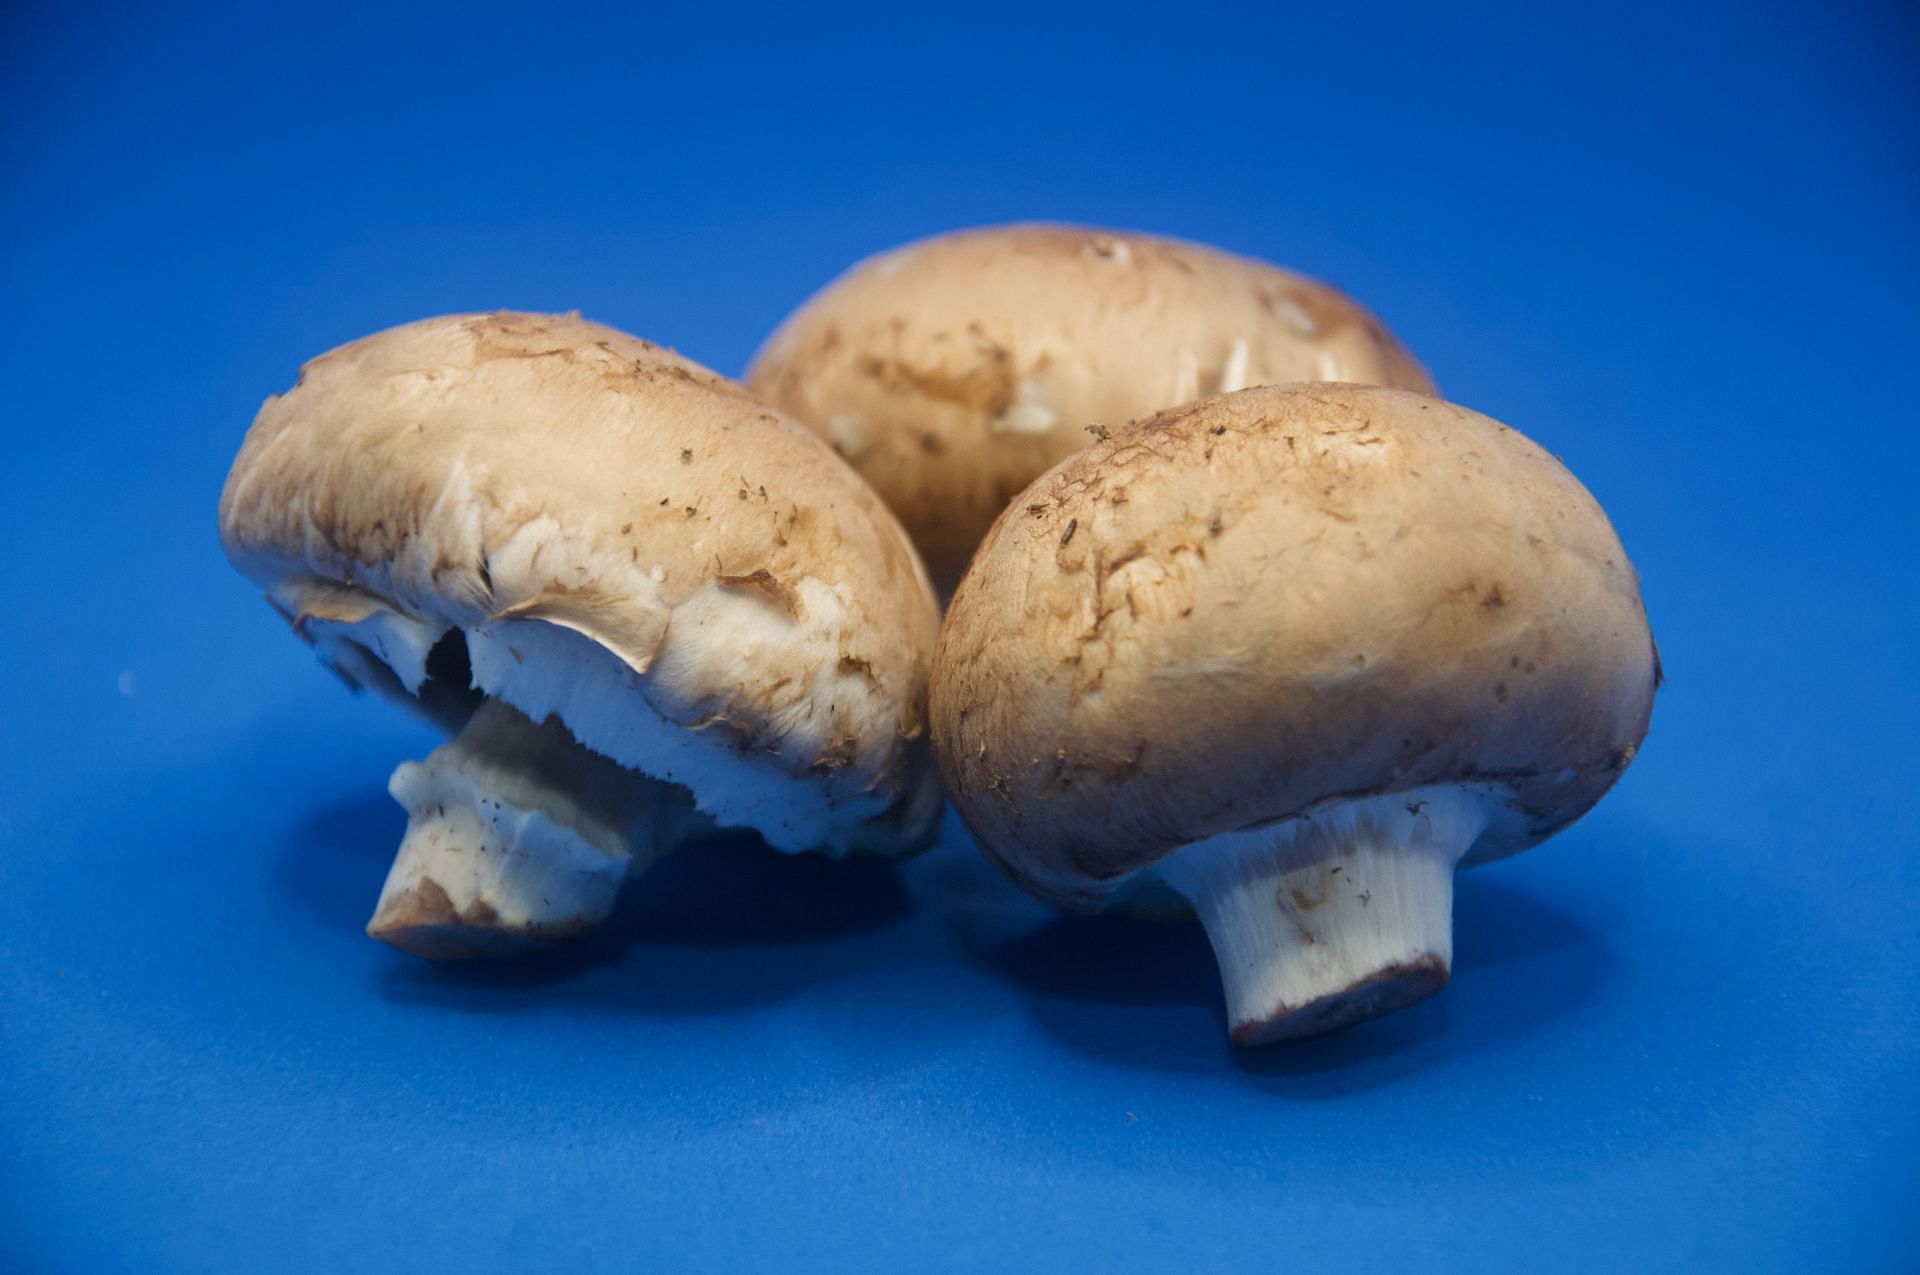 Portobello mushrooms are rich in Vitamin D. (Image via Unsplash/ Dan Dennis)